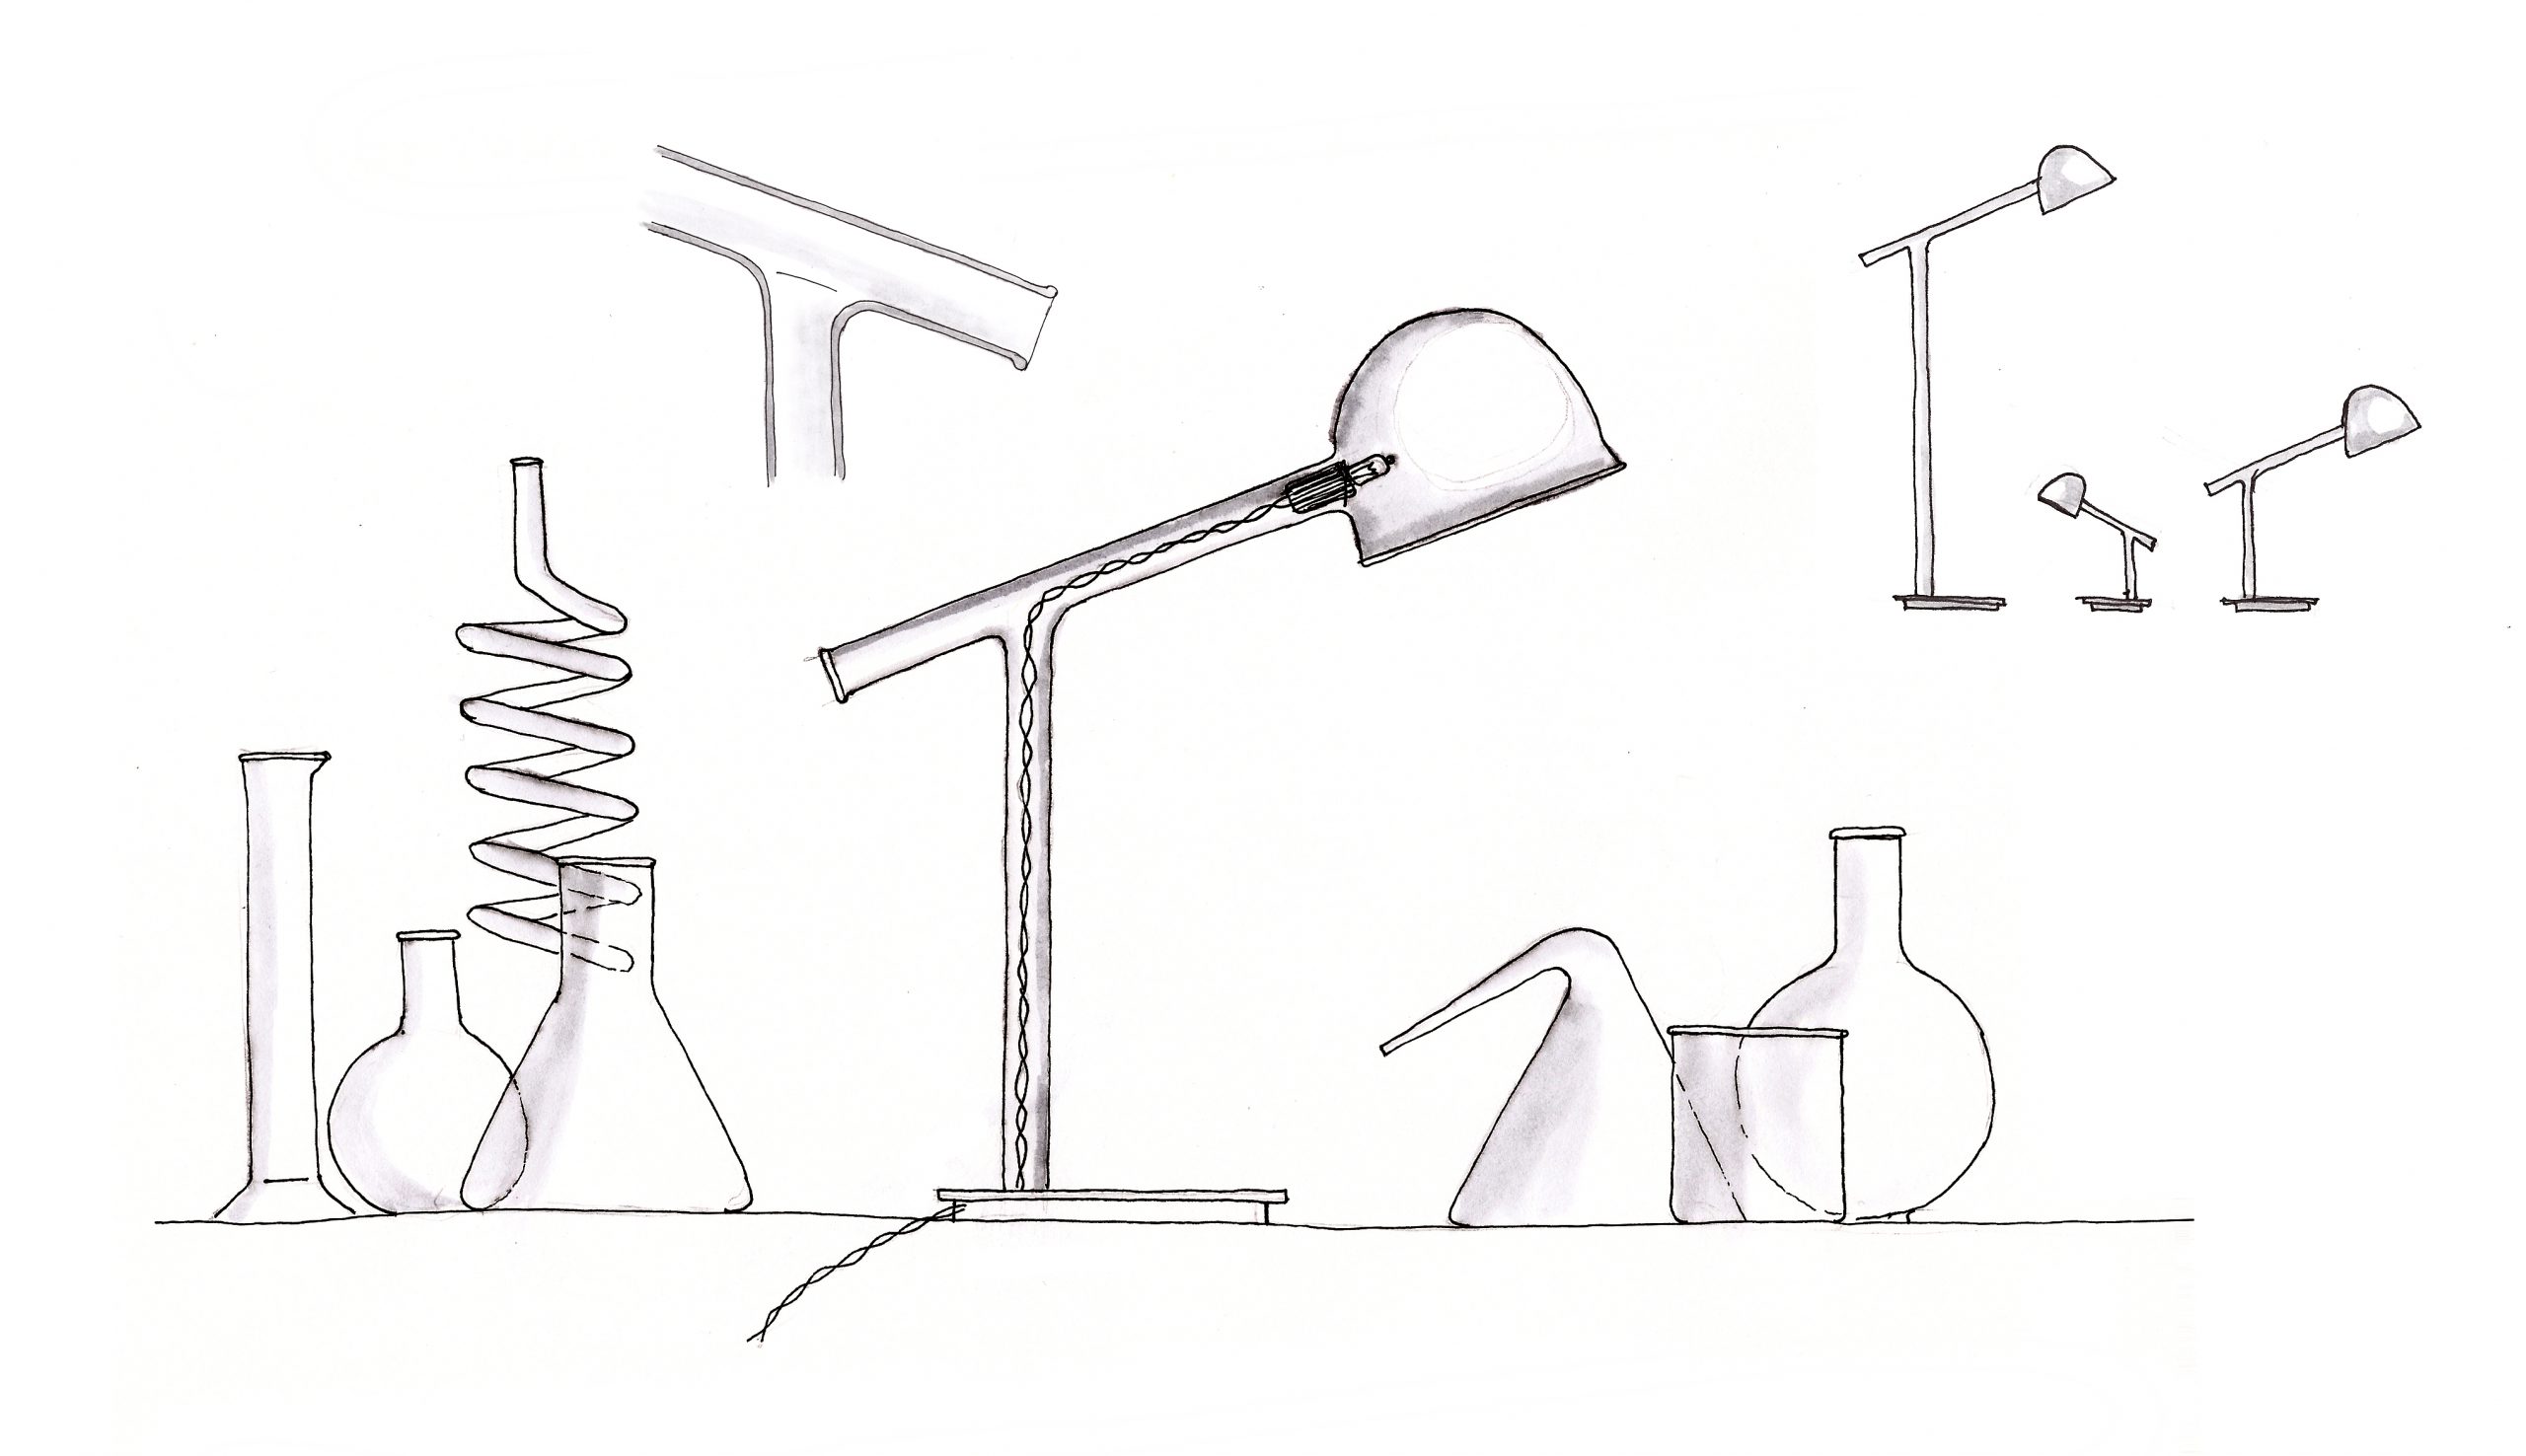 Sketch of the Labo borosilicate glass lamp by Debiasi Sandri for Penta